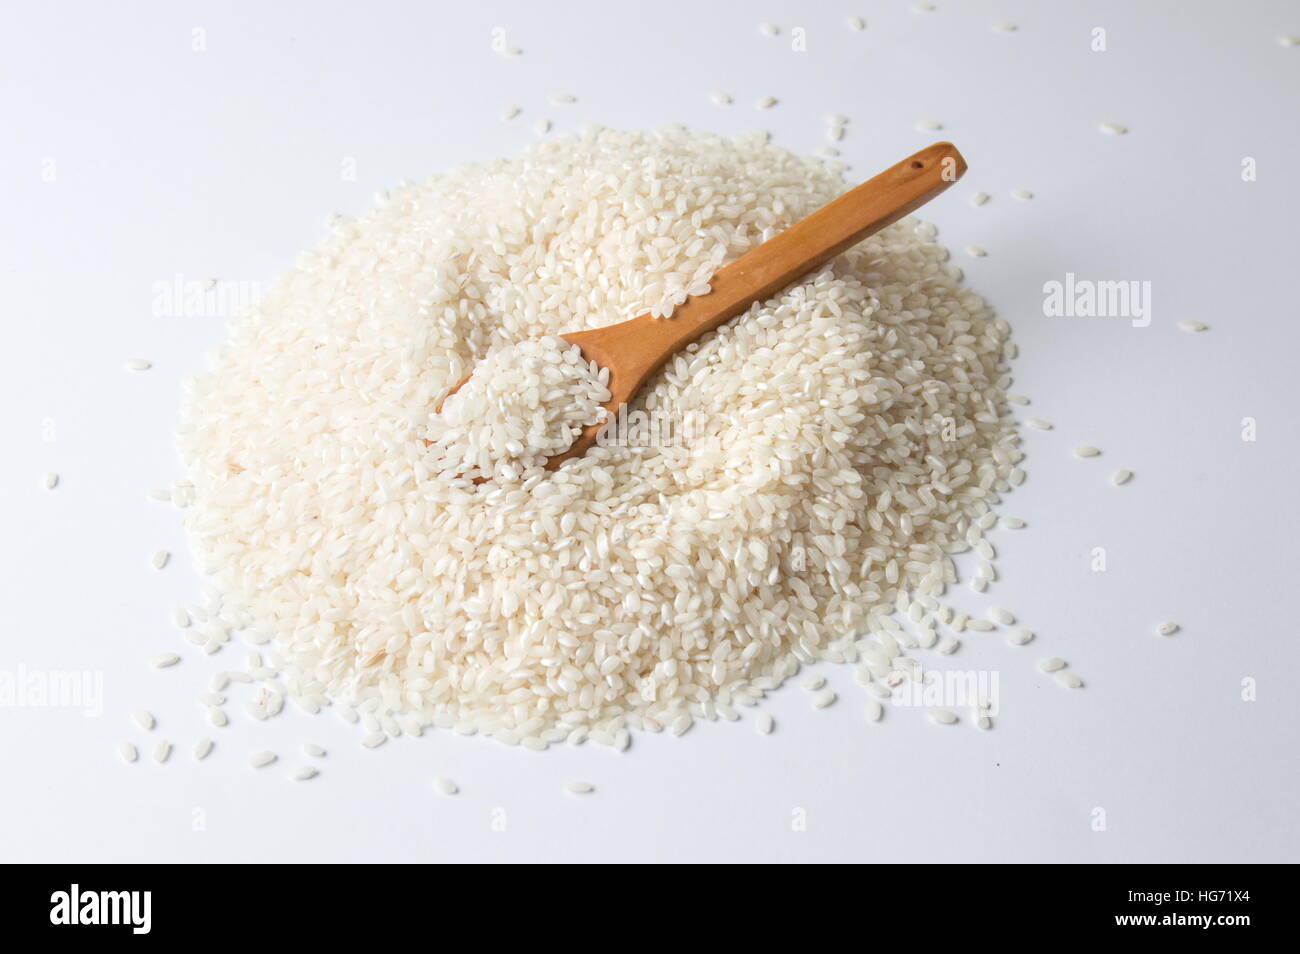 Holzlöffel in Haufen von Reis auf weißem Hintergrund Stockfoto